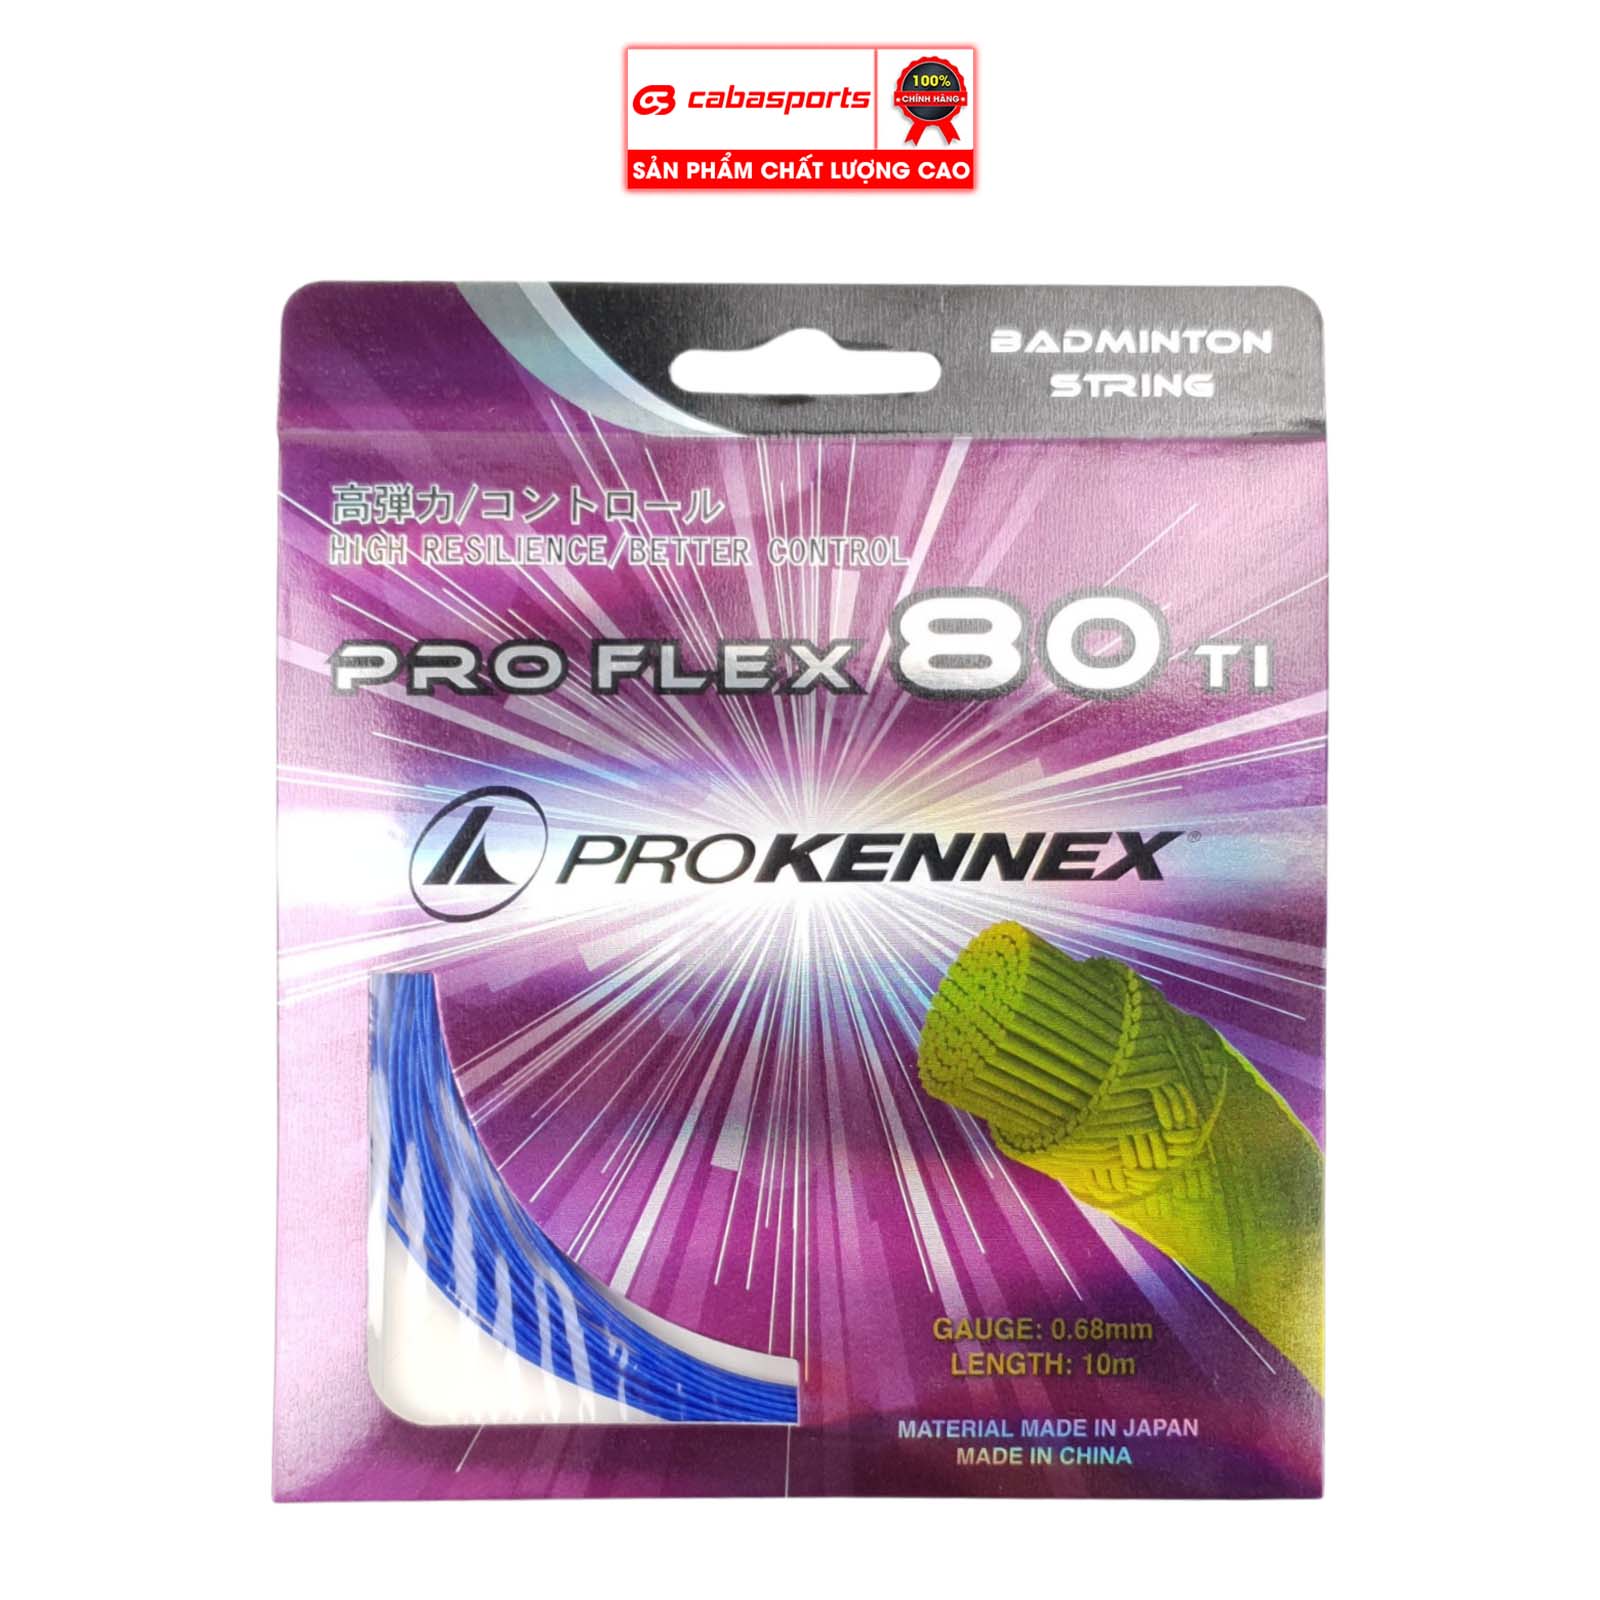 Dây cước cầu lông Prokennex PRO FLEX 80TI siêu bền đẹp (MÀU NGẪU NHIÊN)